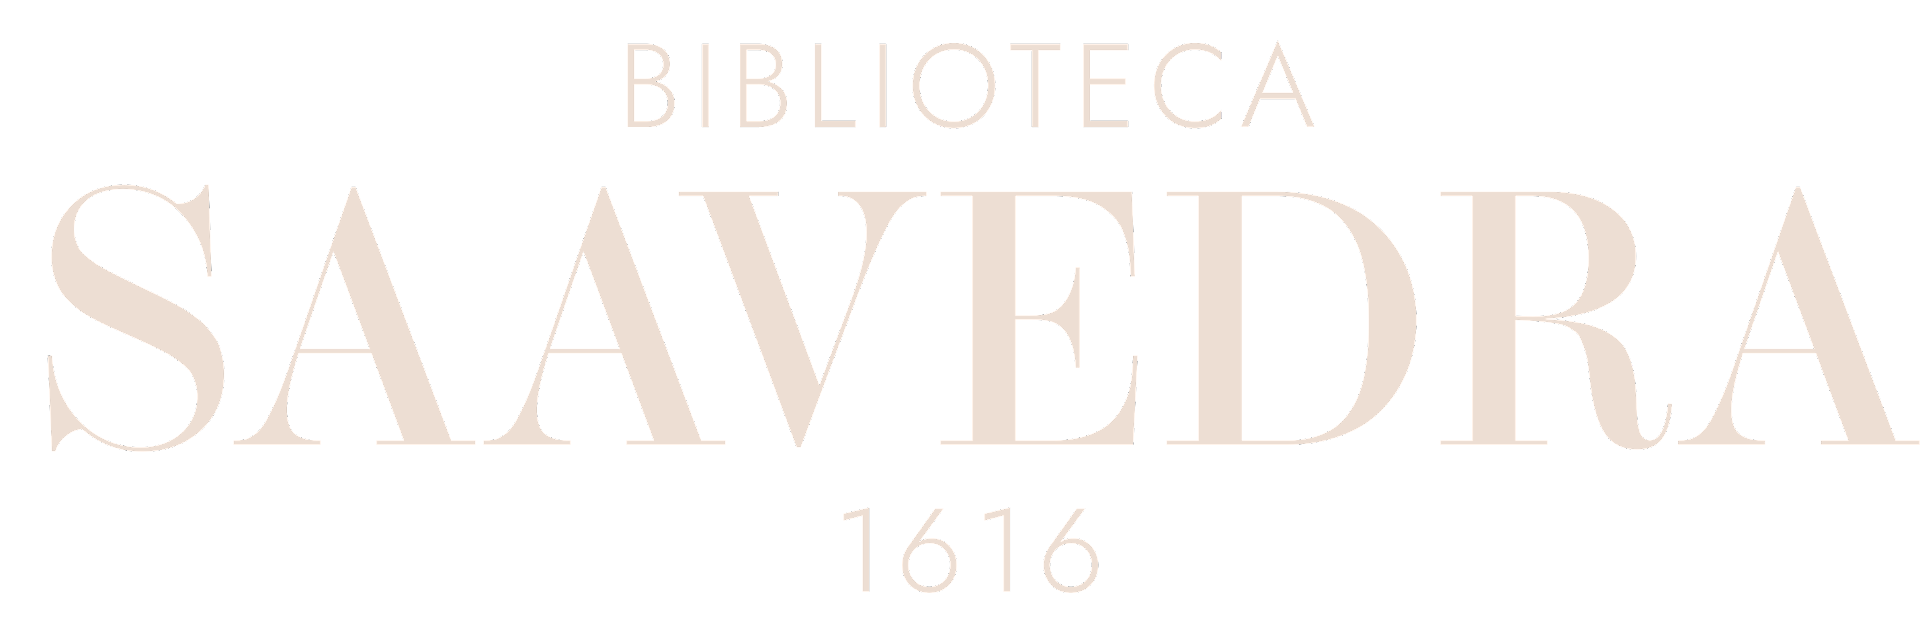 O Ateneu - RAUL POMPÉIA (com marcas de uso) – Biblioteca Saavedra